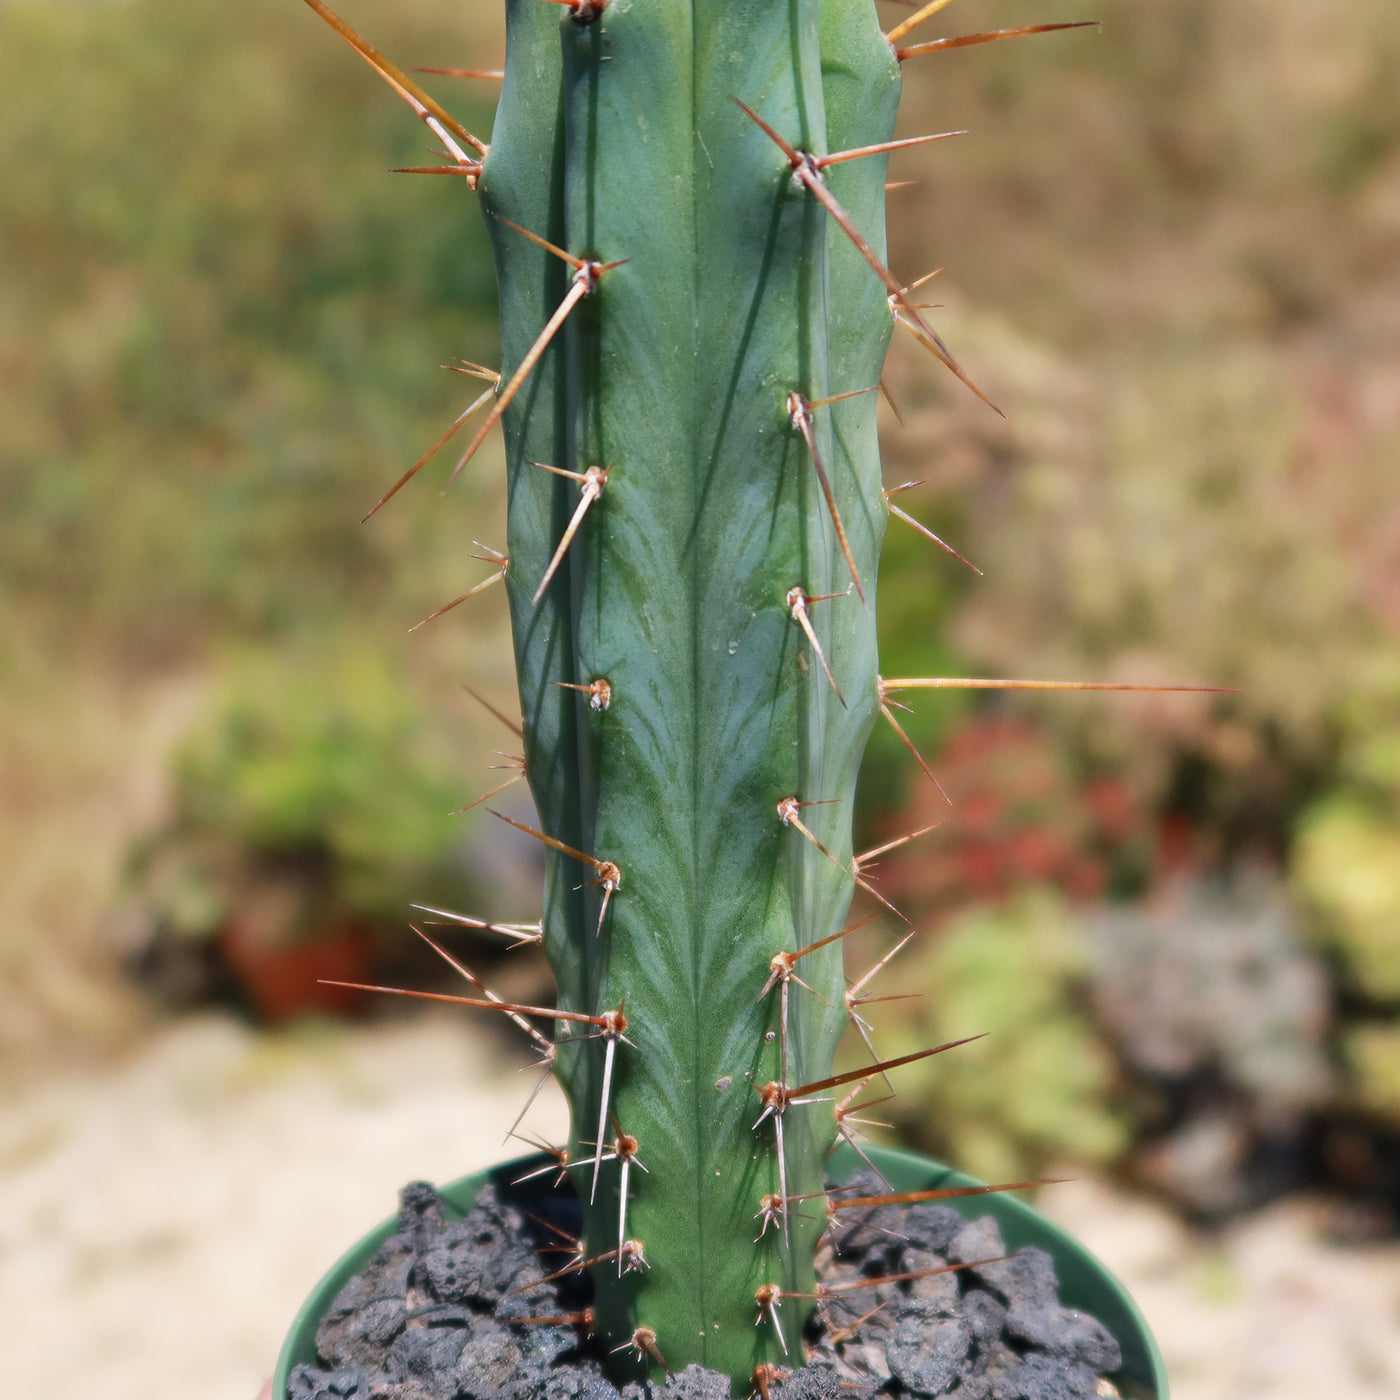 Bolivian Torch Cactus 'Trichocereus bridgesii'